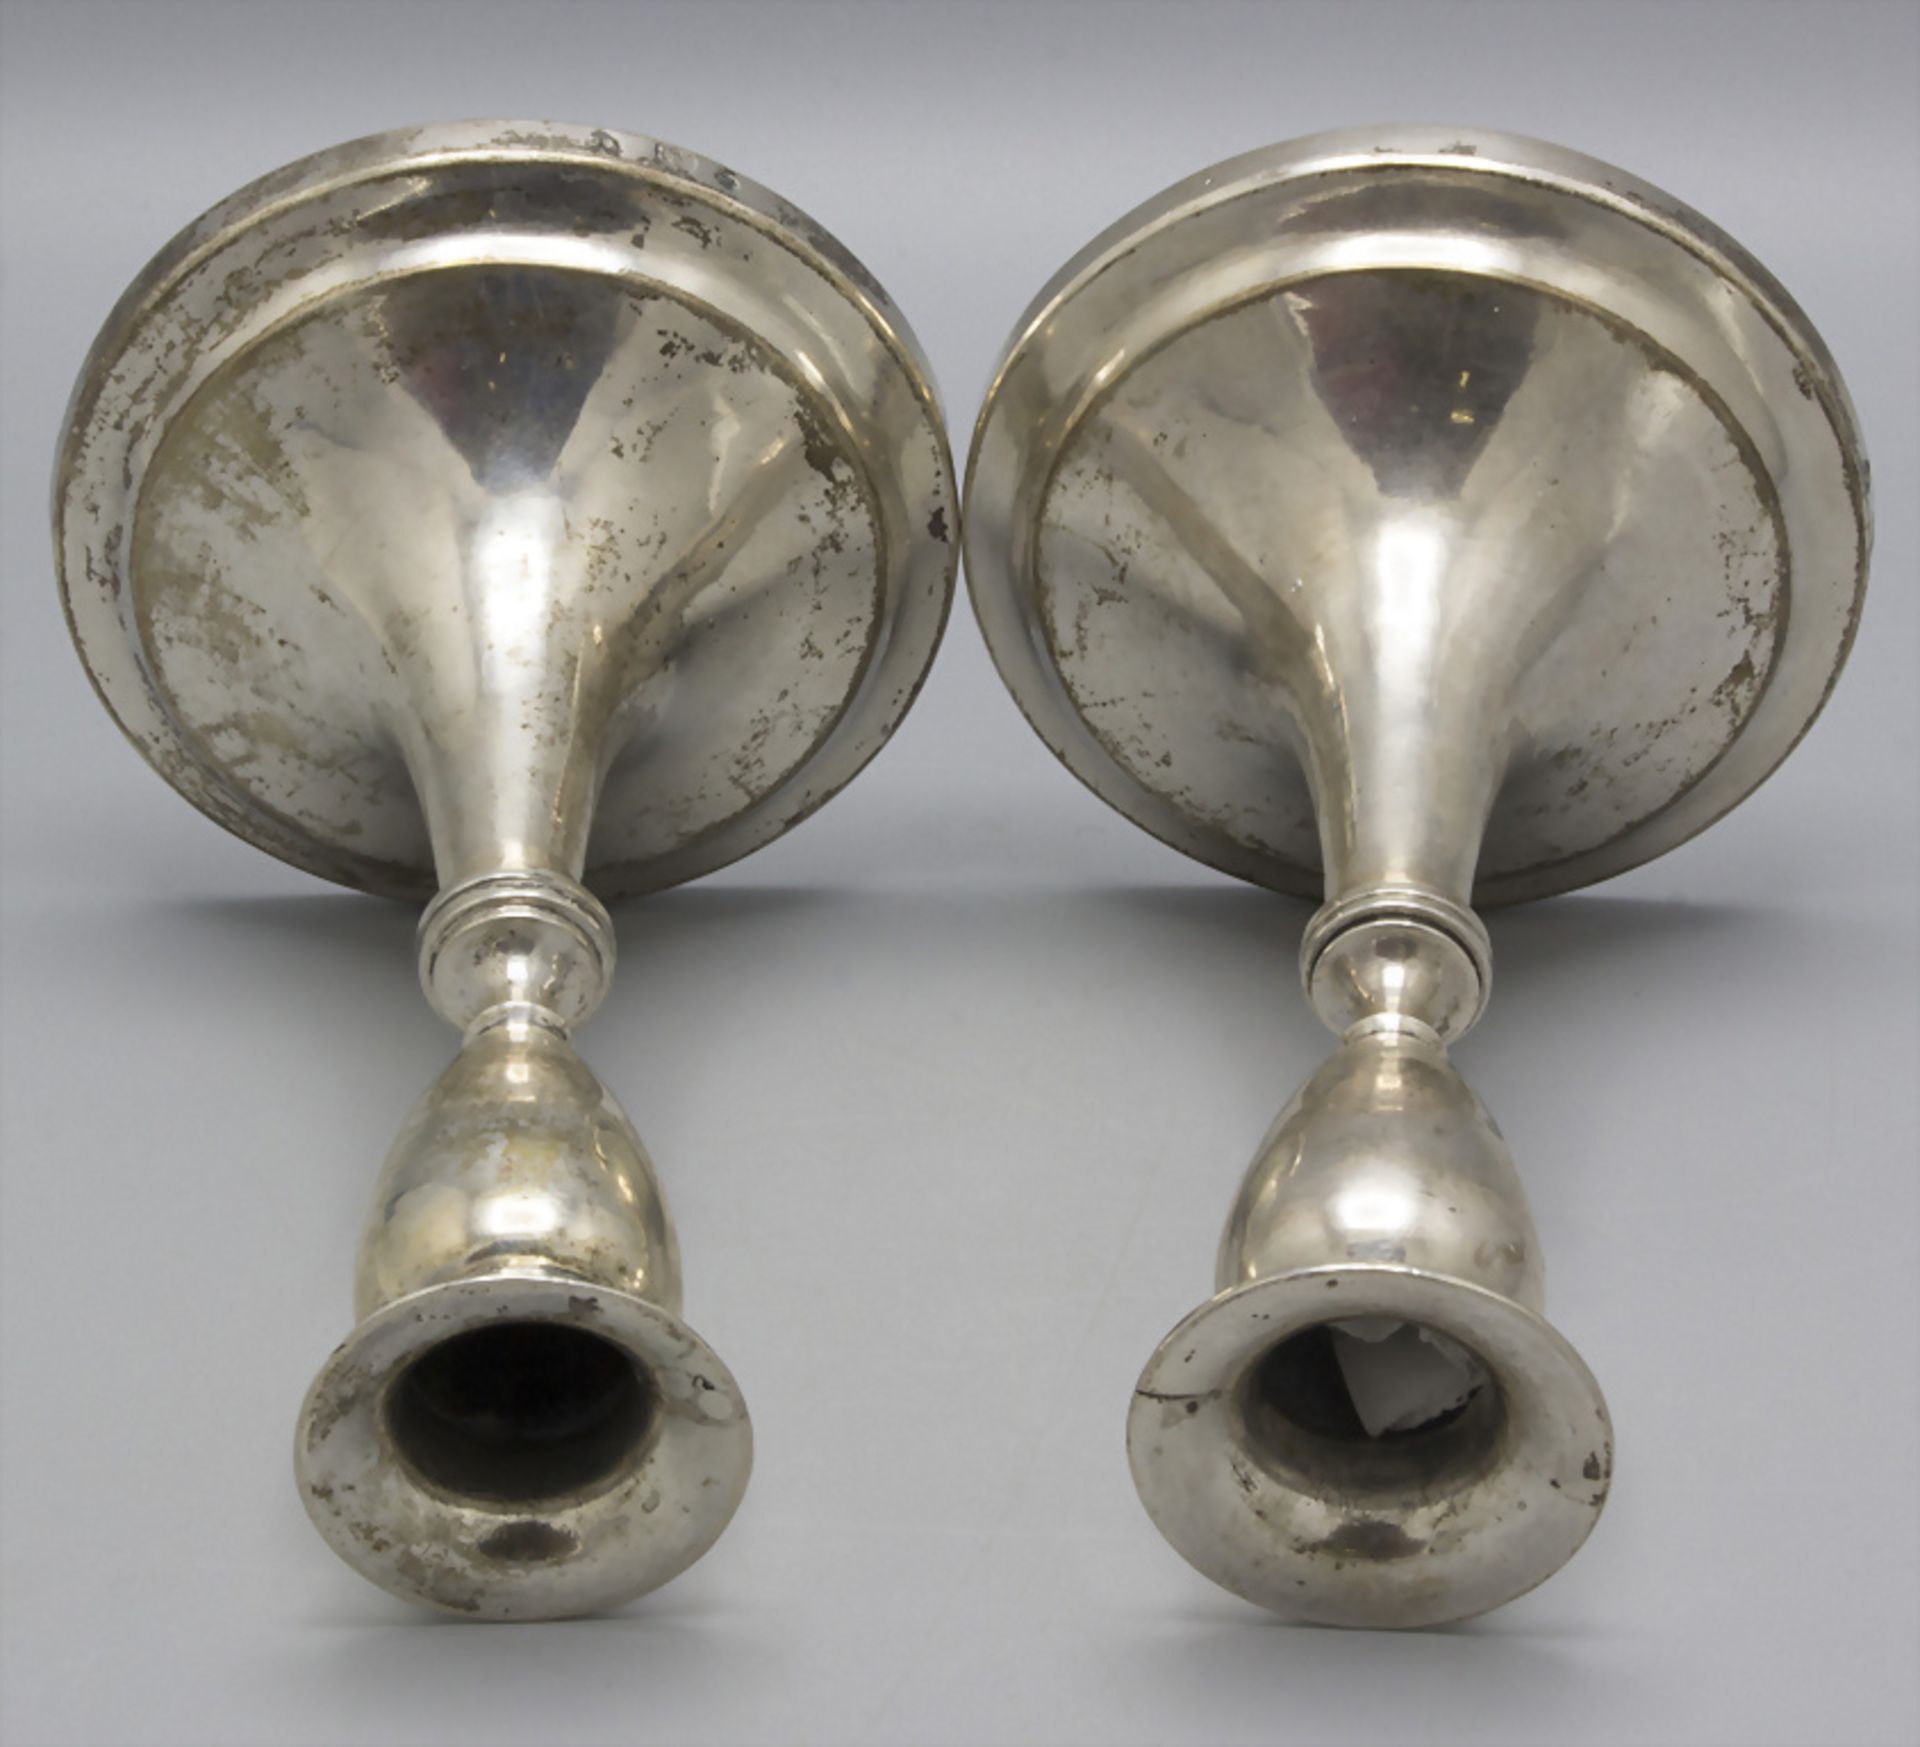 Paar Empire Reiseleuchter / A pair of Empire silver travel candlesticks, Bertold Gerder, Wien, 1818 - Image 2 of 5